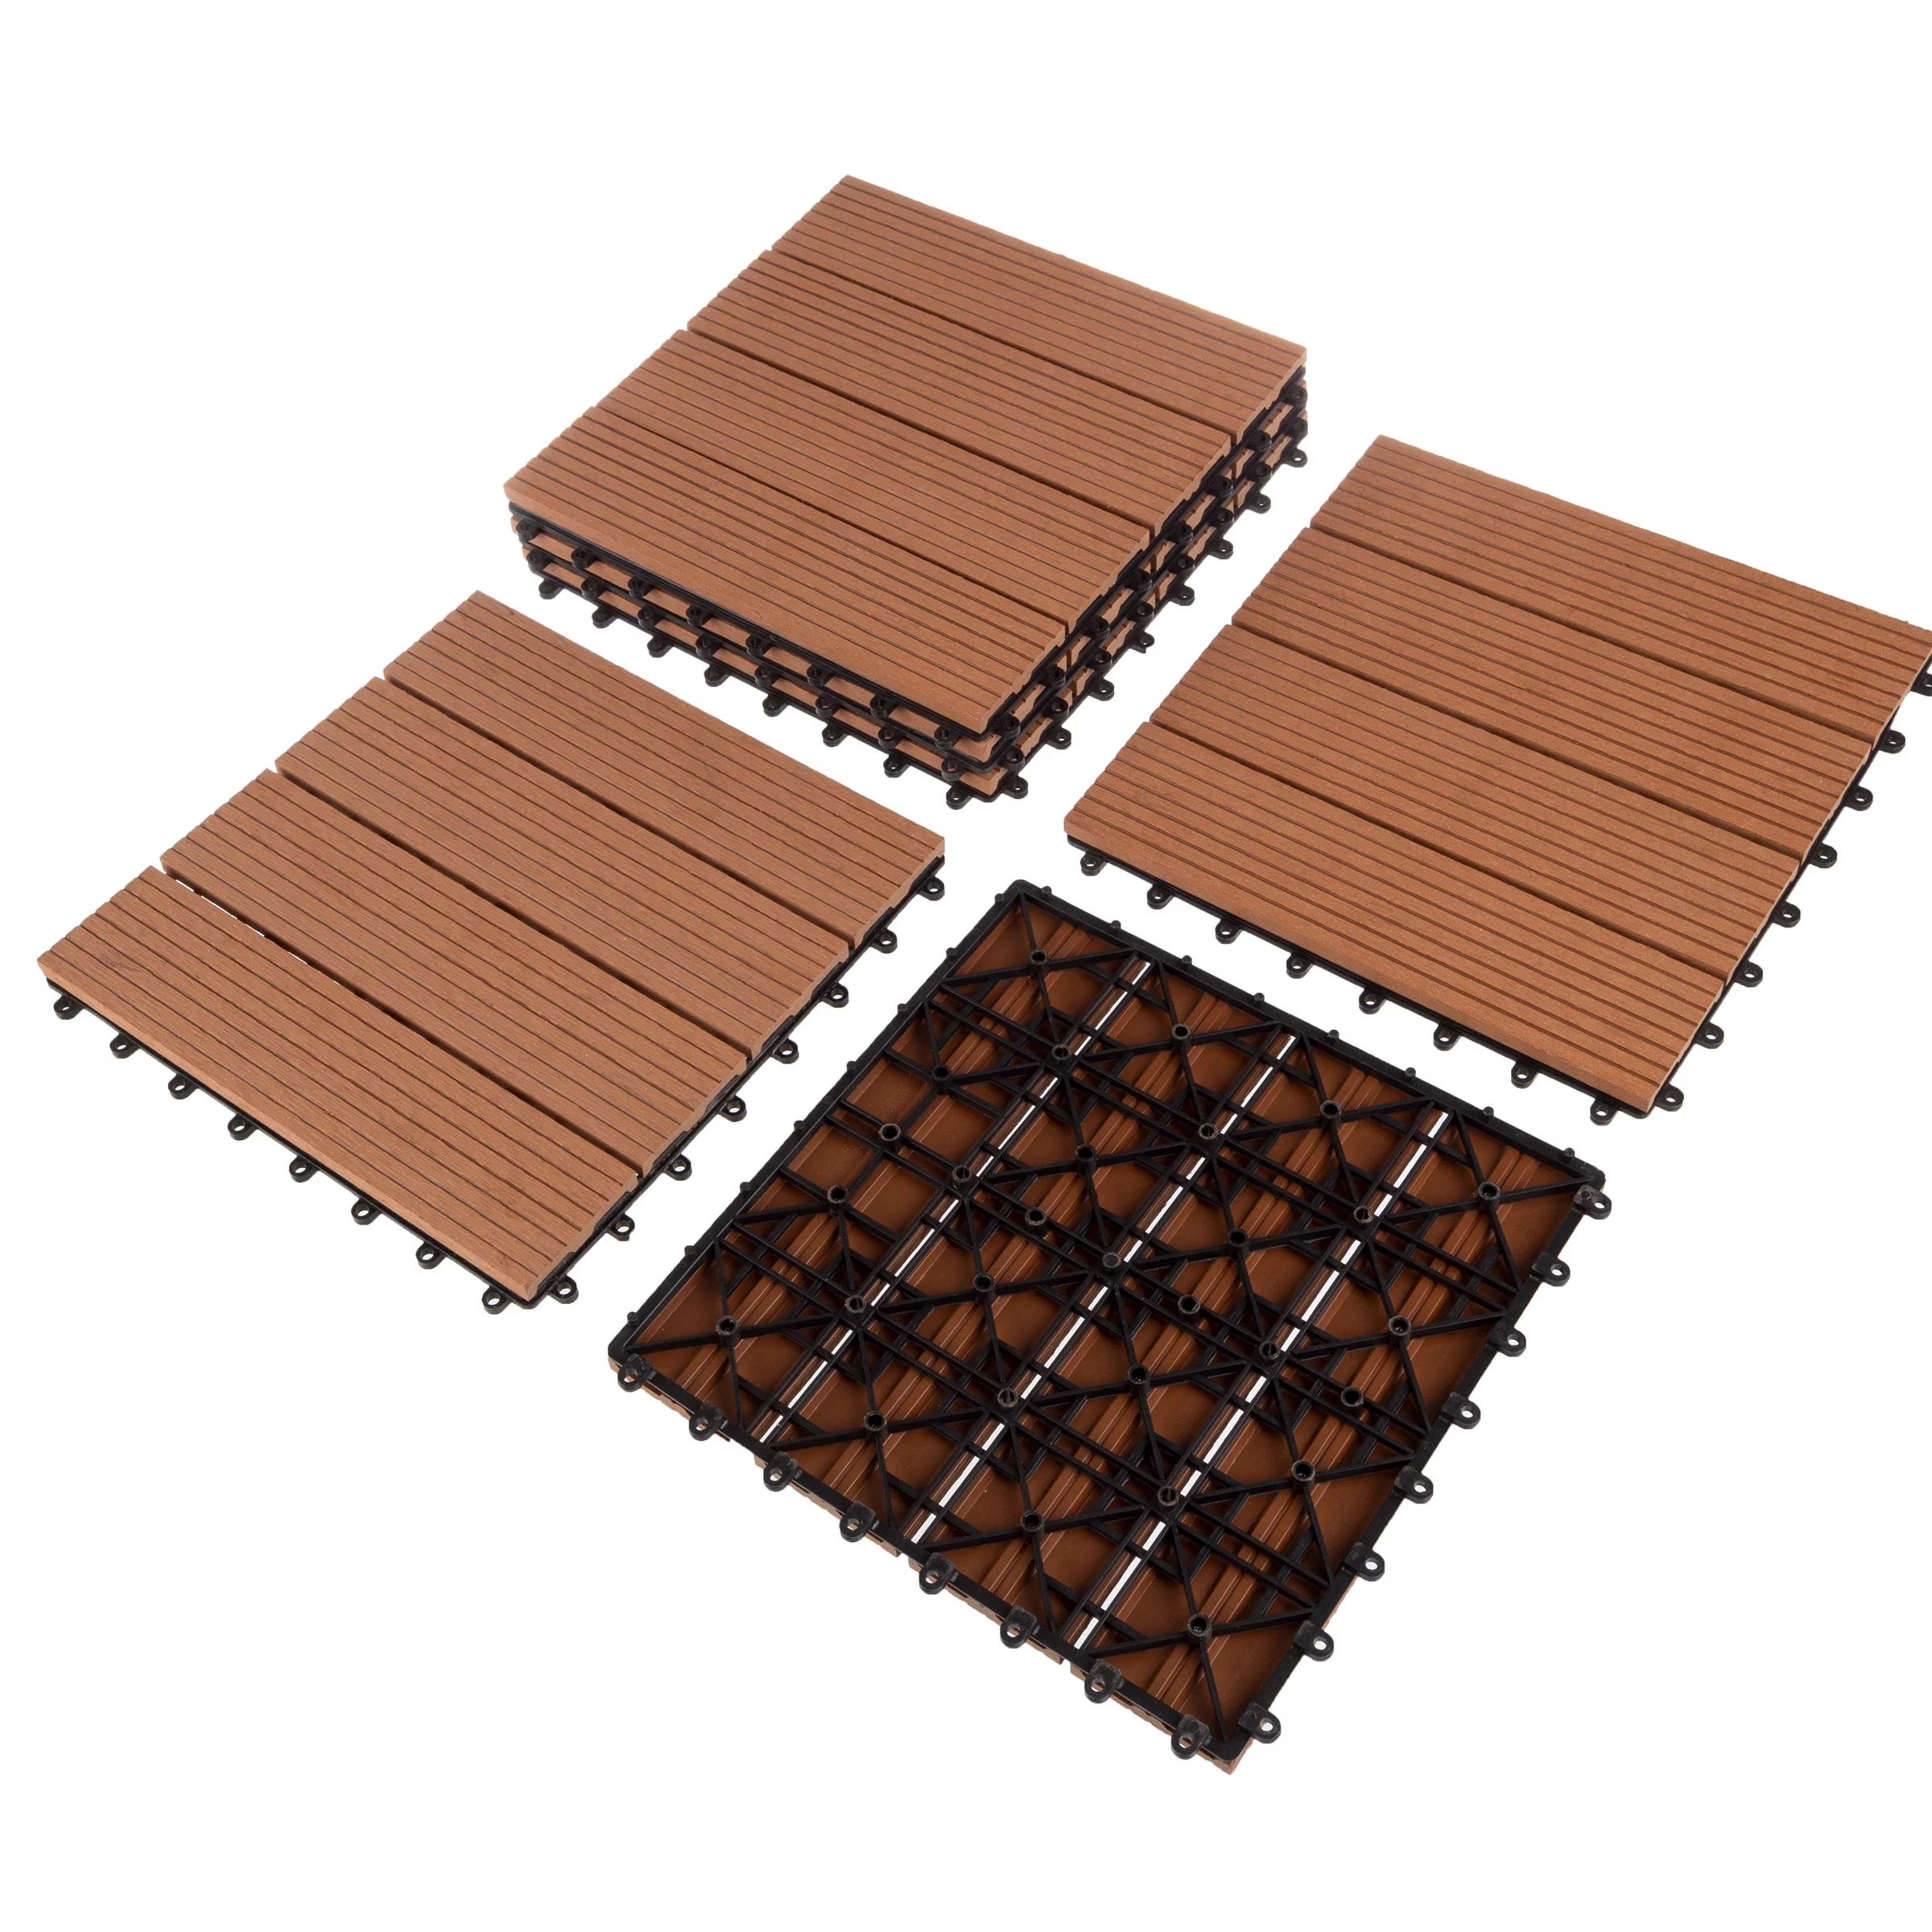 Patio Floor Tiles - Set of 6 Wood/Plastic Composite Interlocking Deck Tiles for Outdoor Flooring ... | Walmart (US)